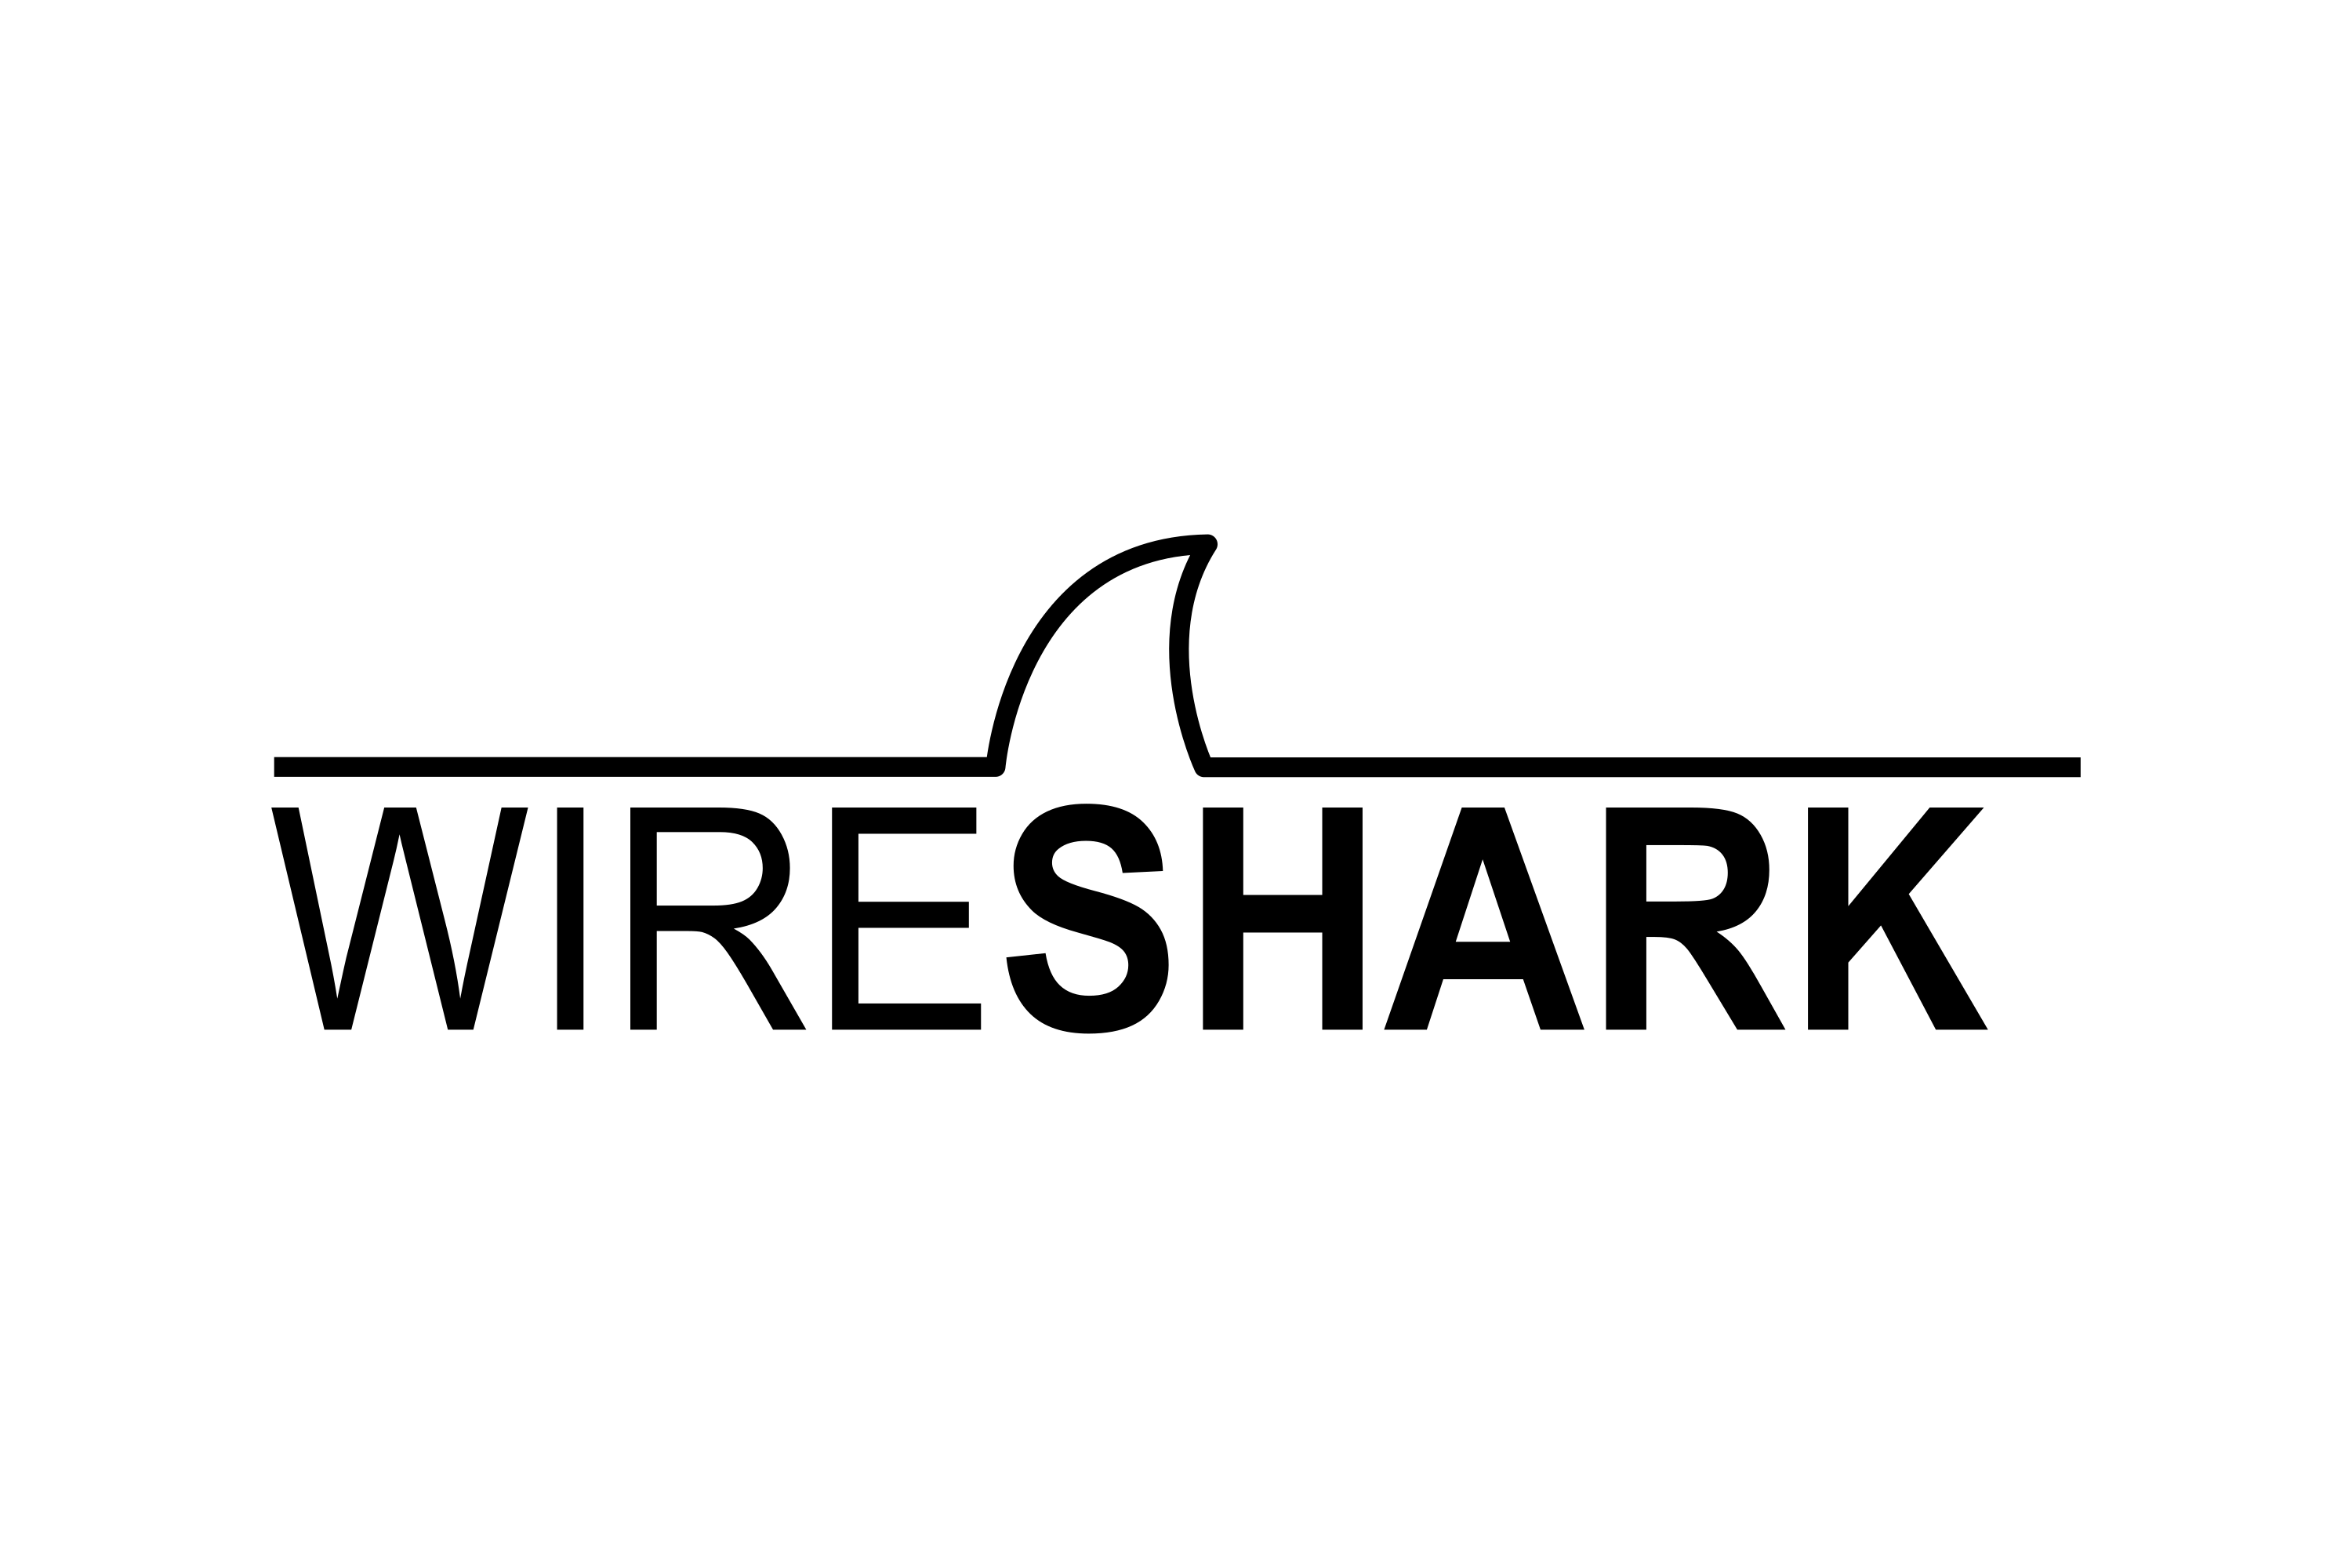 Wireshark download. Wireshark. Wireshark logo. Wireshark PNG. Wireshark logo PNG.